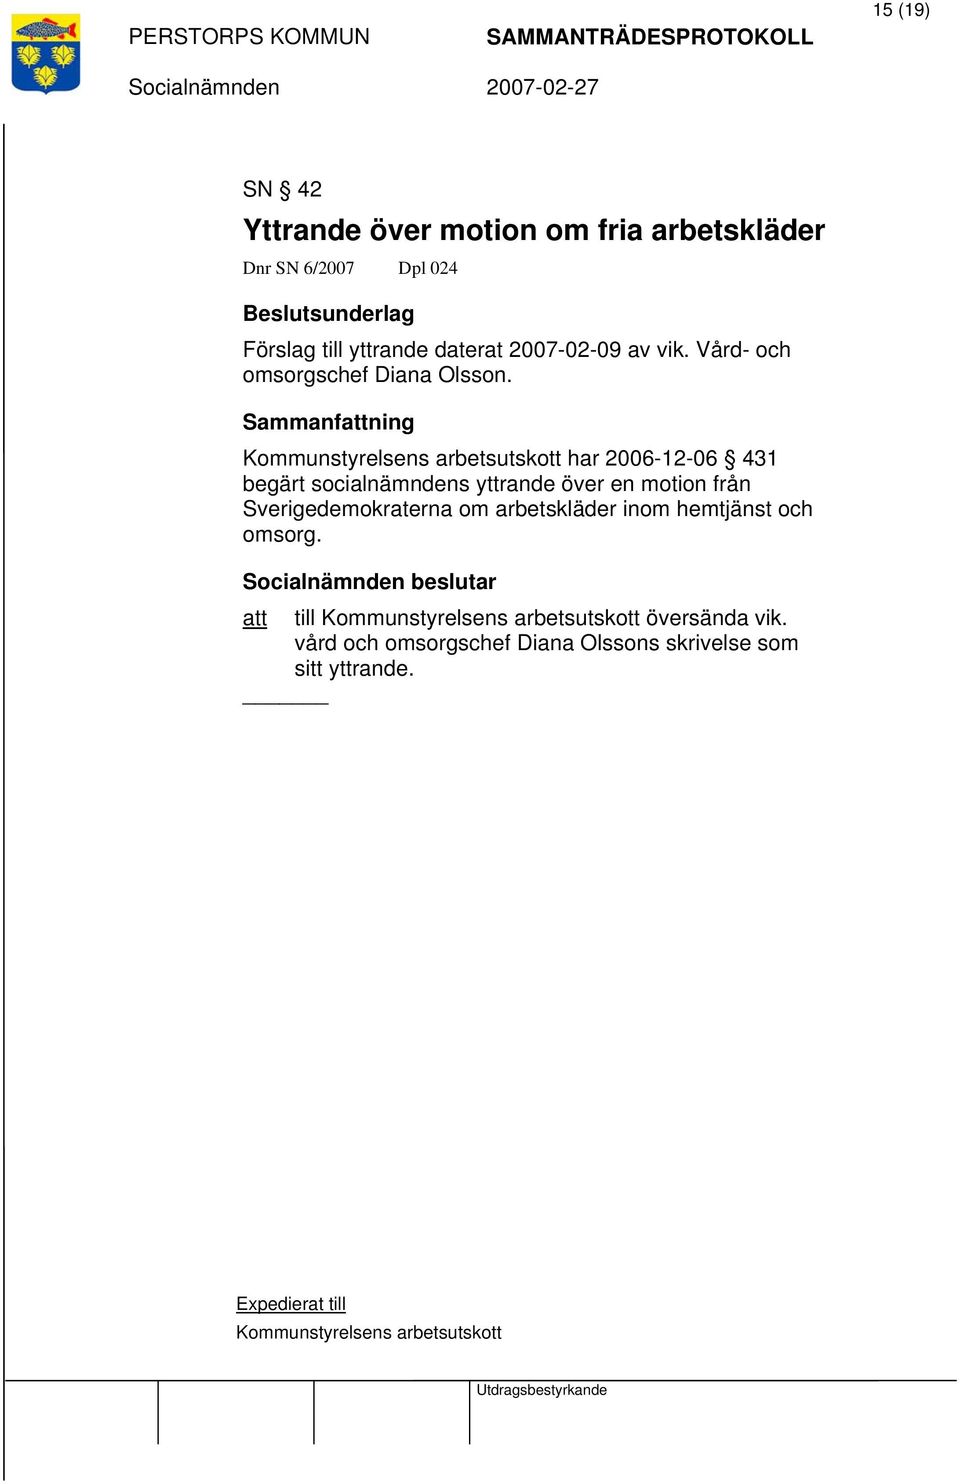 Kommunstyrelsens arbetsutskott har 2006-12-06 431 begärt socialnämndens yttrande över en motion från Sverigedemokraterna om